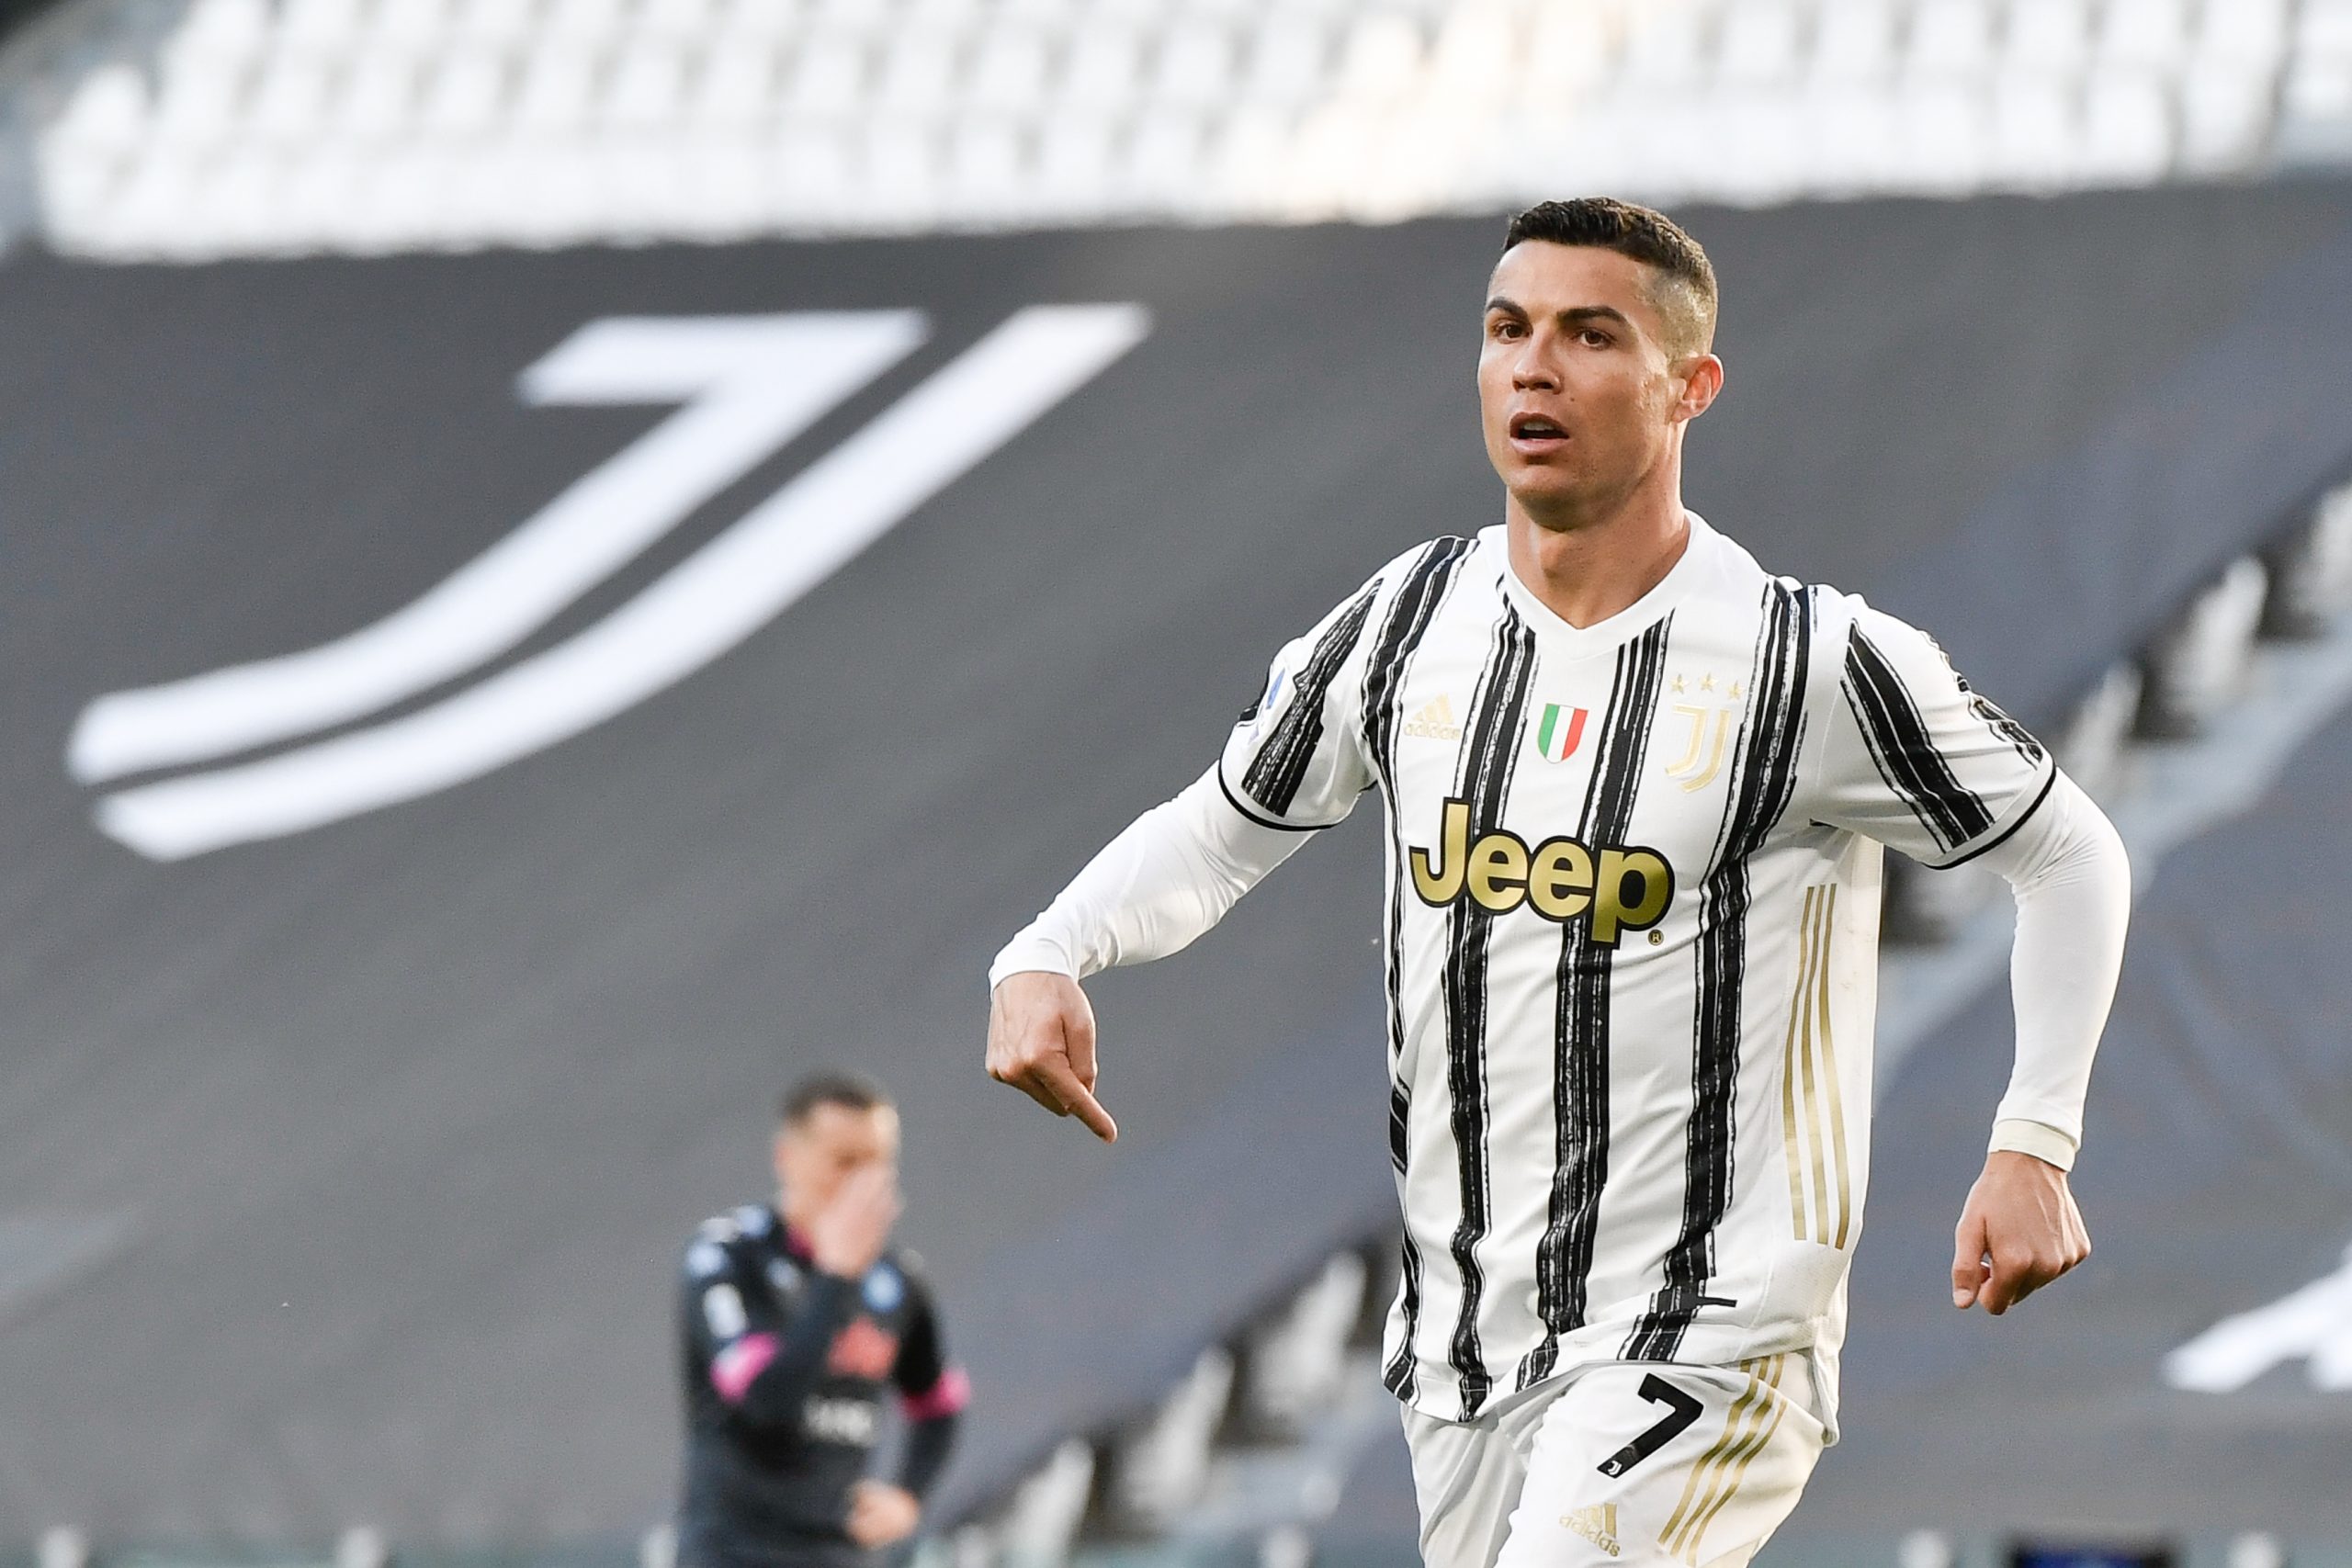 Verso l’Atalanta, i convocati di Pirlo: Ronaldo out, torna Bonucci